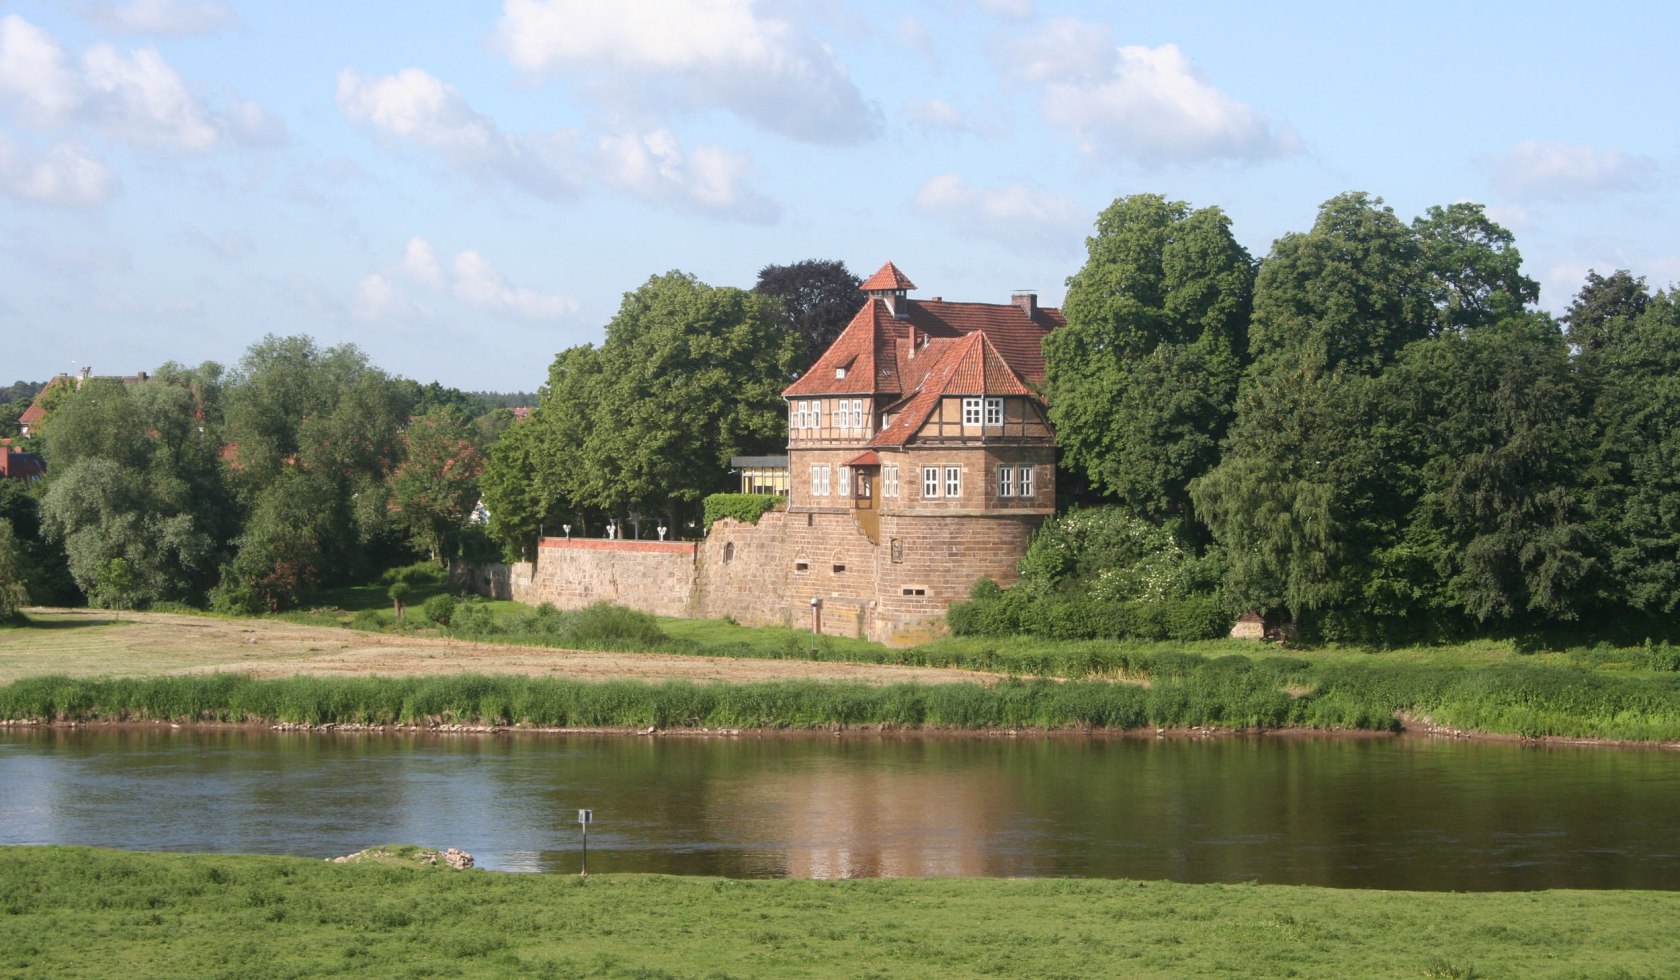 Das Weserenaissance Schloss in Petershagen hinter dem Fluss., © Mittelweser-Touristik GmbH